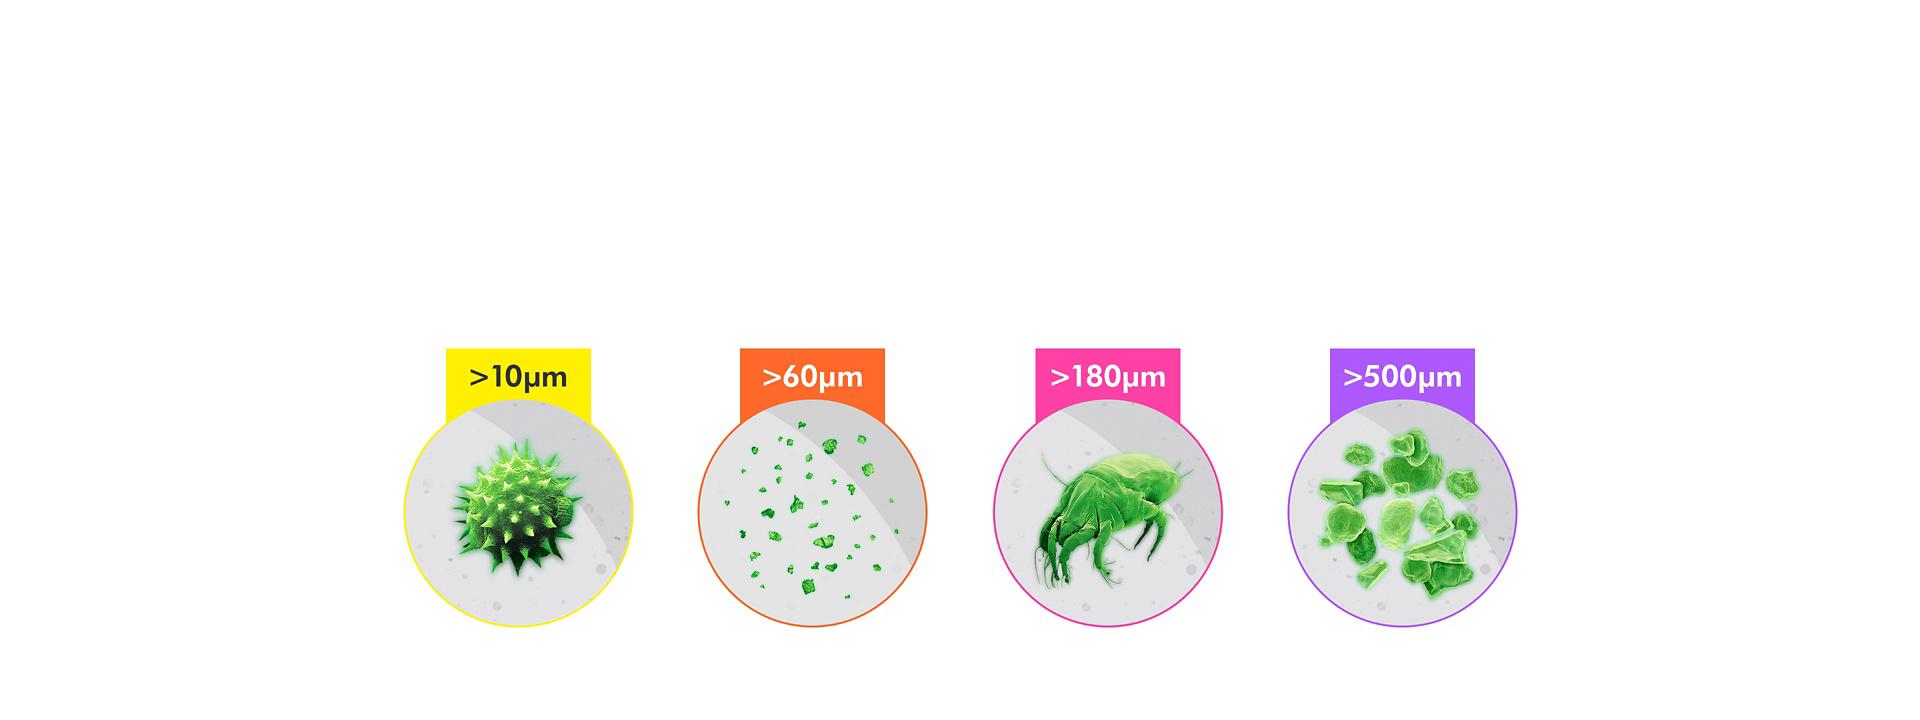 청소기에 측정되는 입자 크기의 4가지 분류